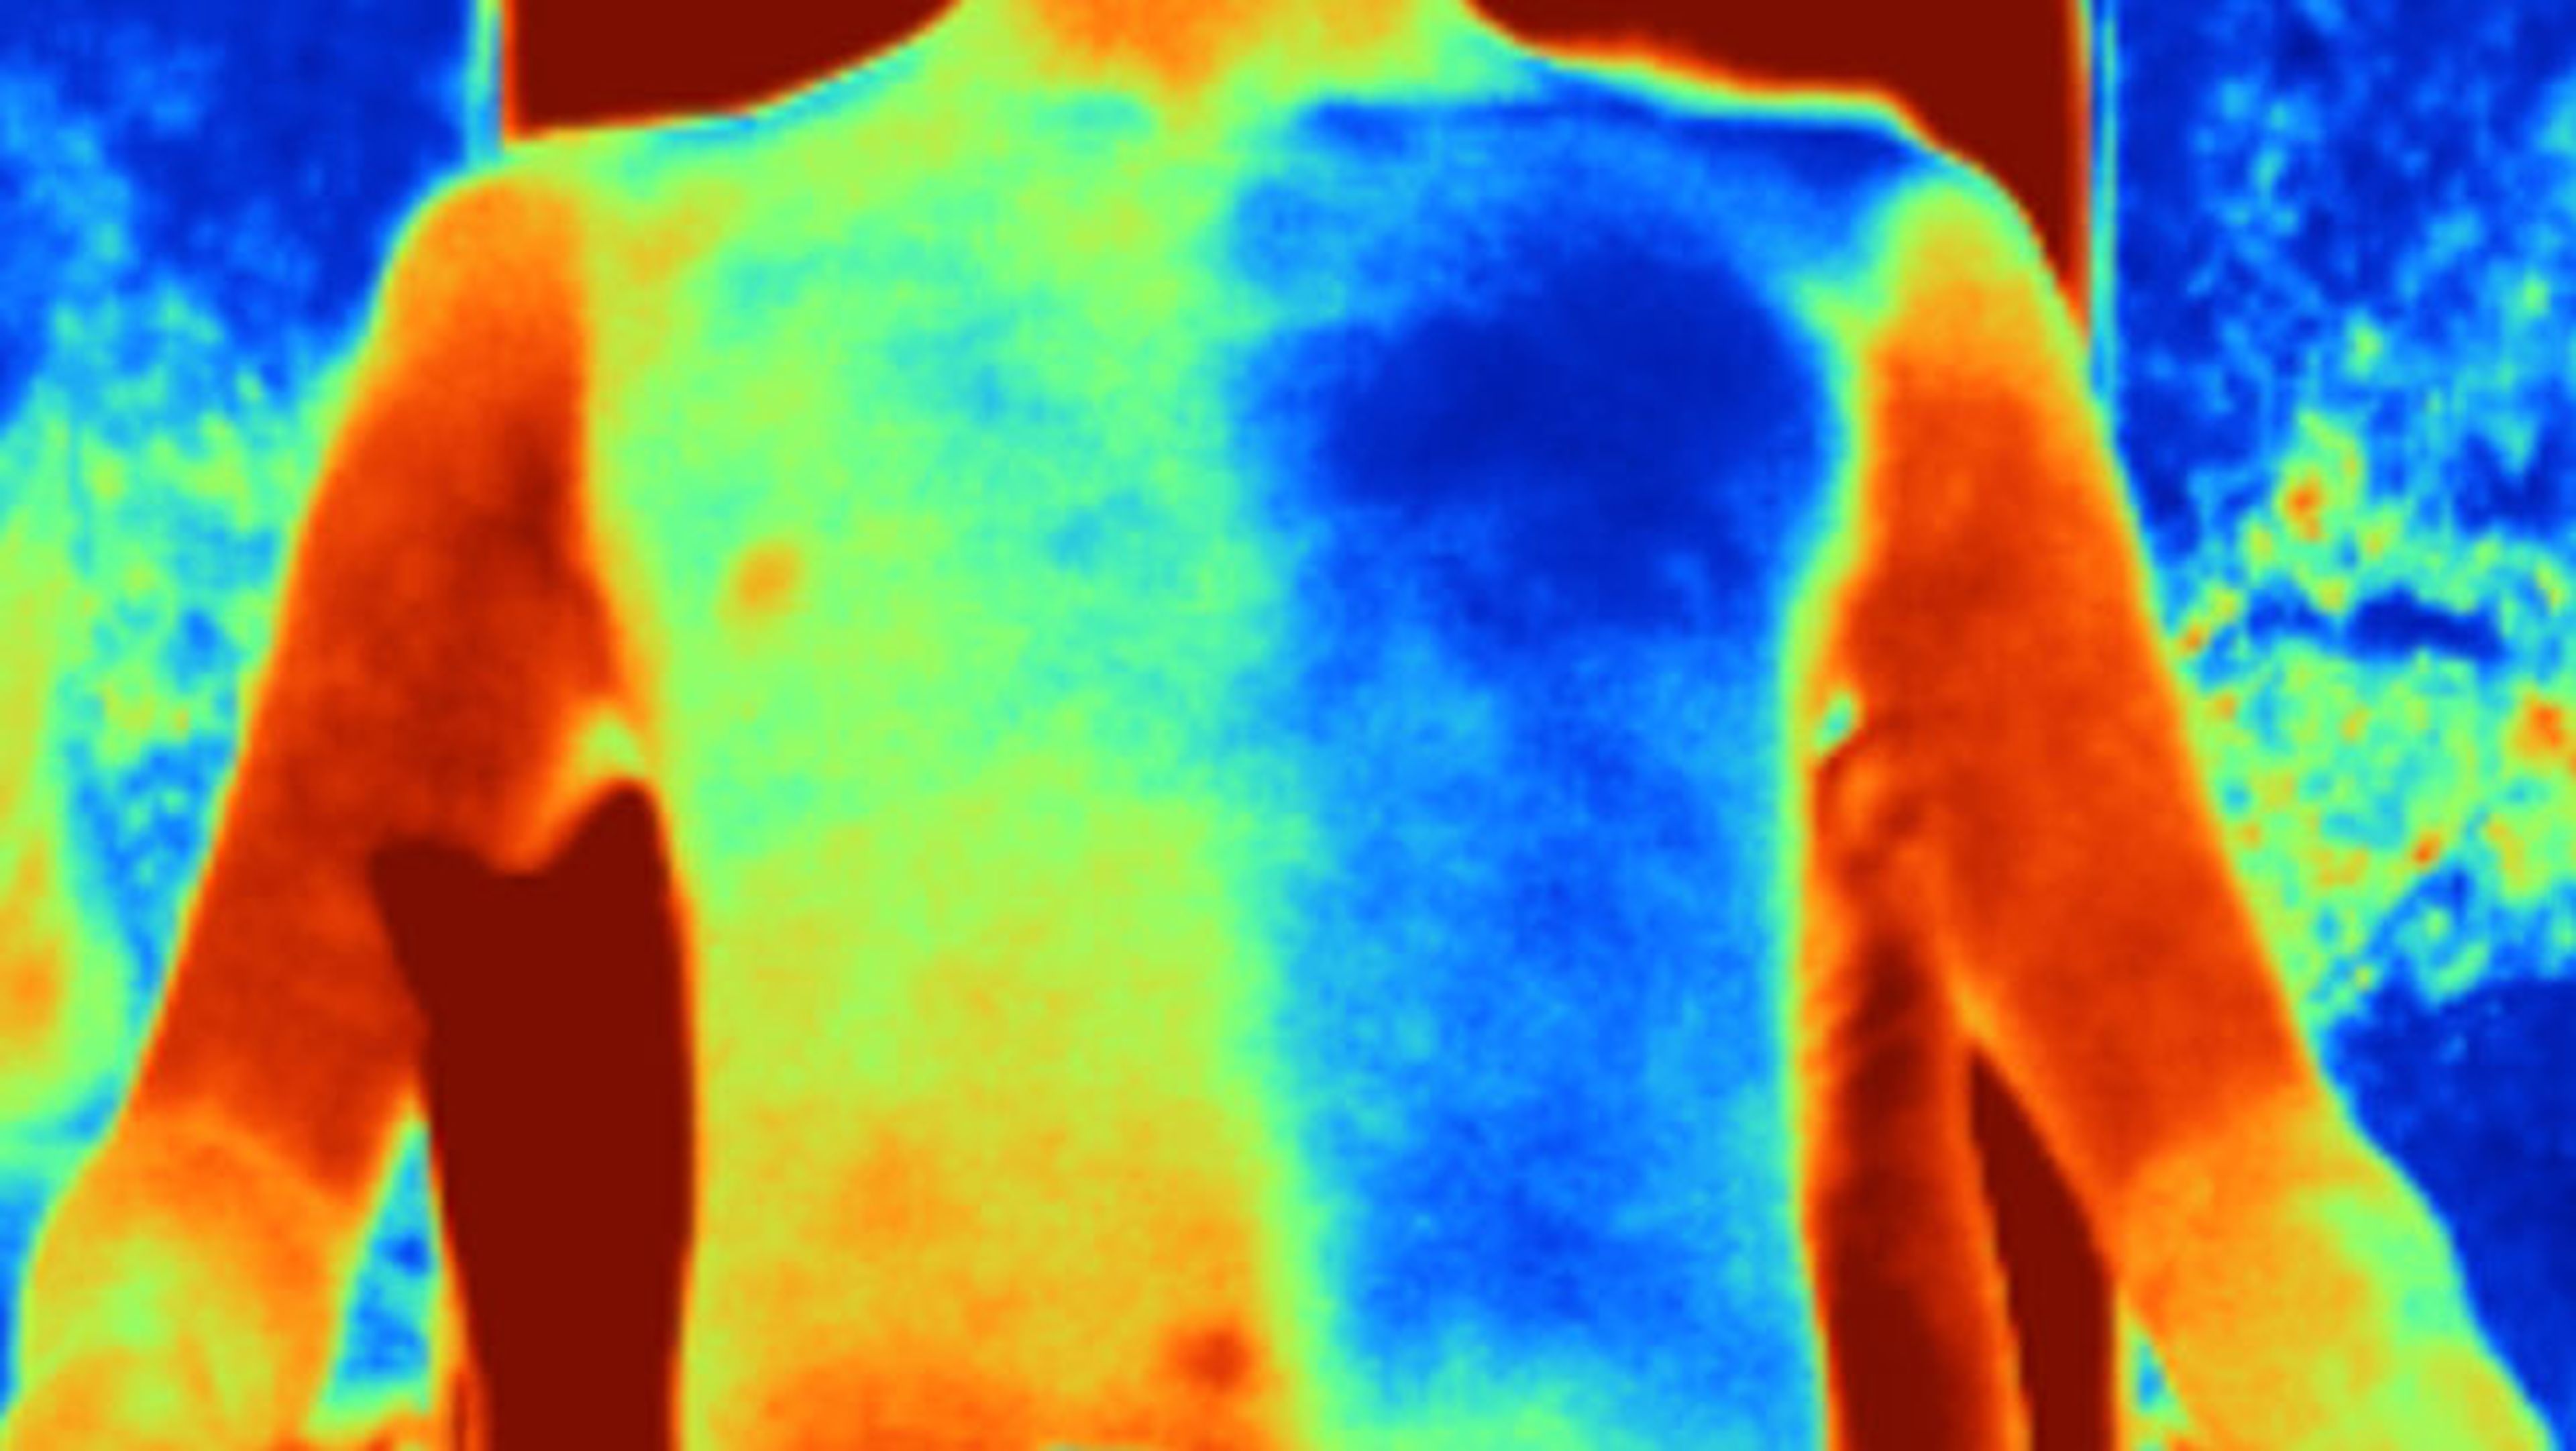 El nuevo material (derecha) reduce significativamente el calor corporal en comparación con el algodón normal (izquierda), como se muestra en esta imagen infrarroja.